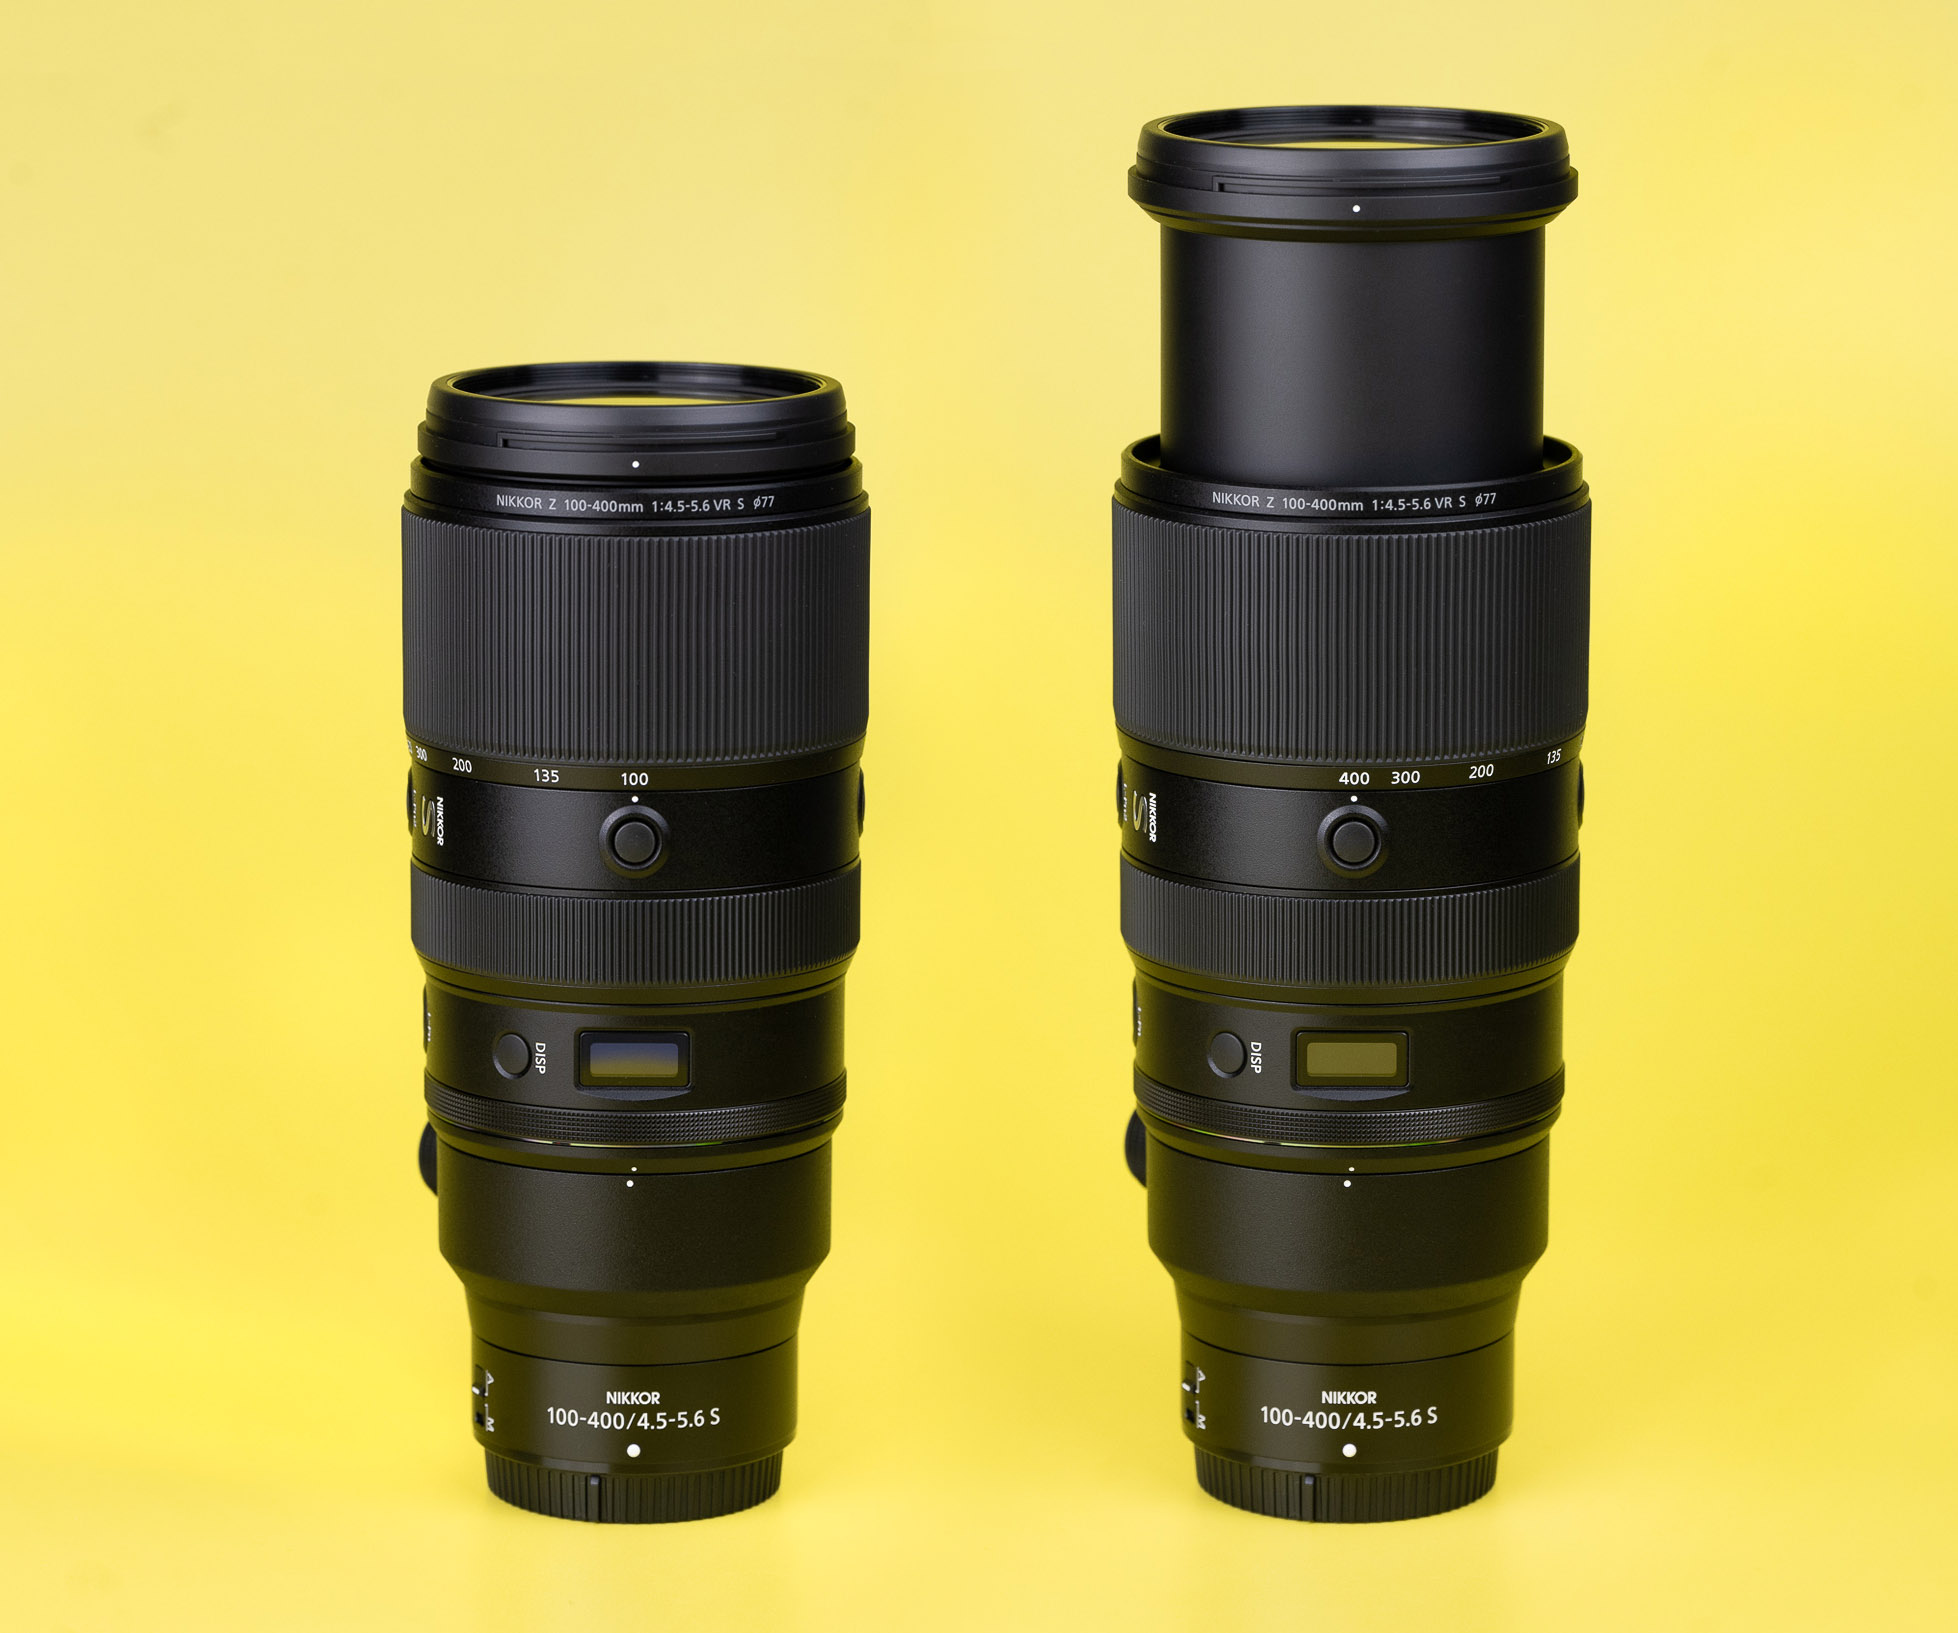 Nikon Z 100-400mm f/4.5-5.6 VR S Review